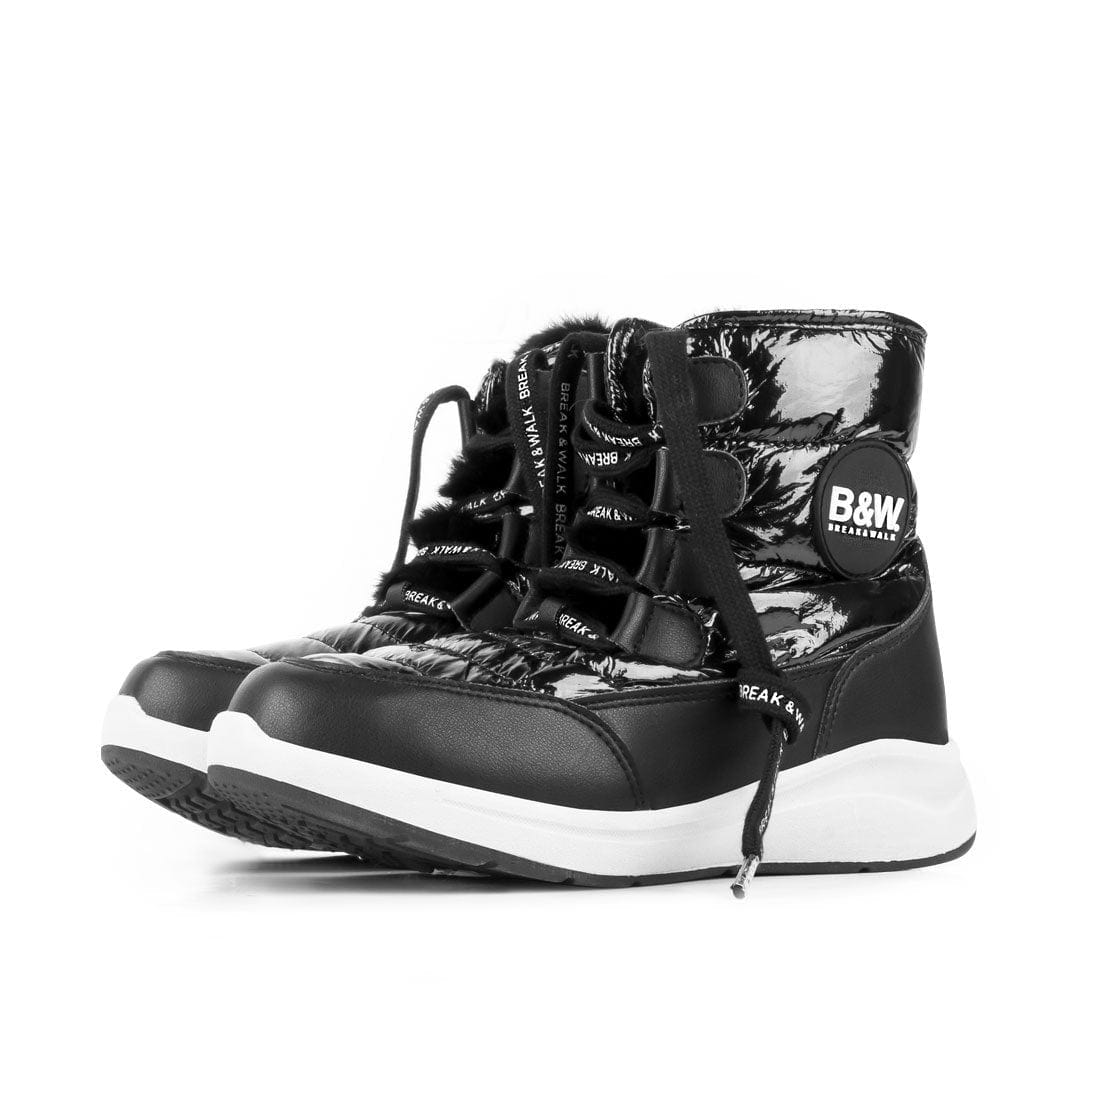 Boots Nilak Black